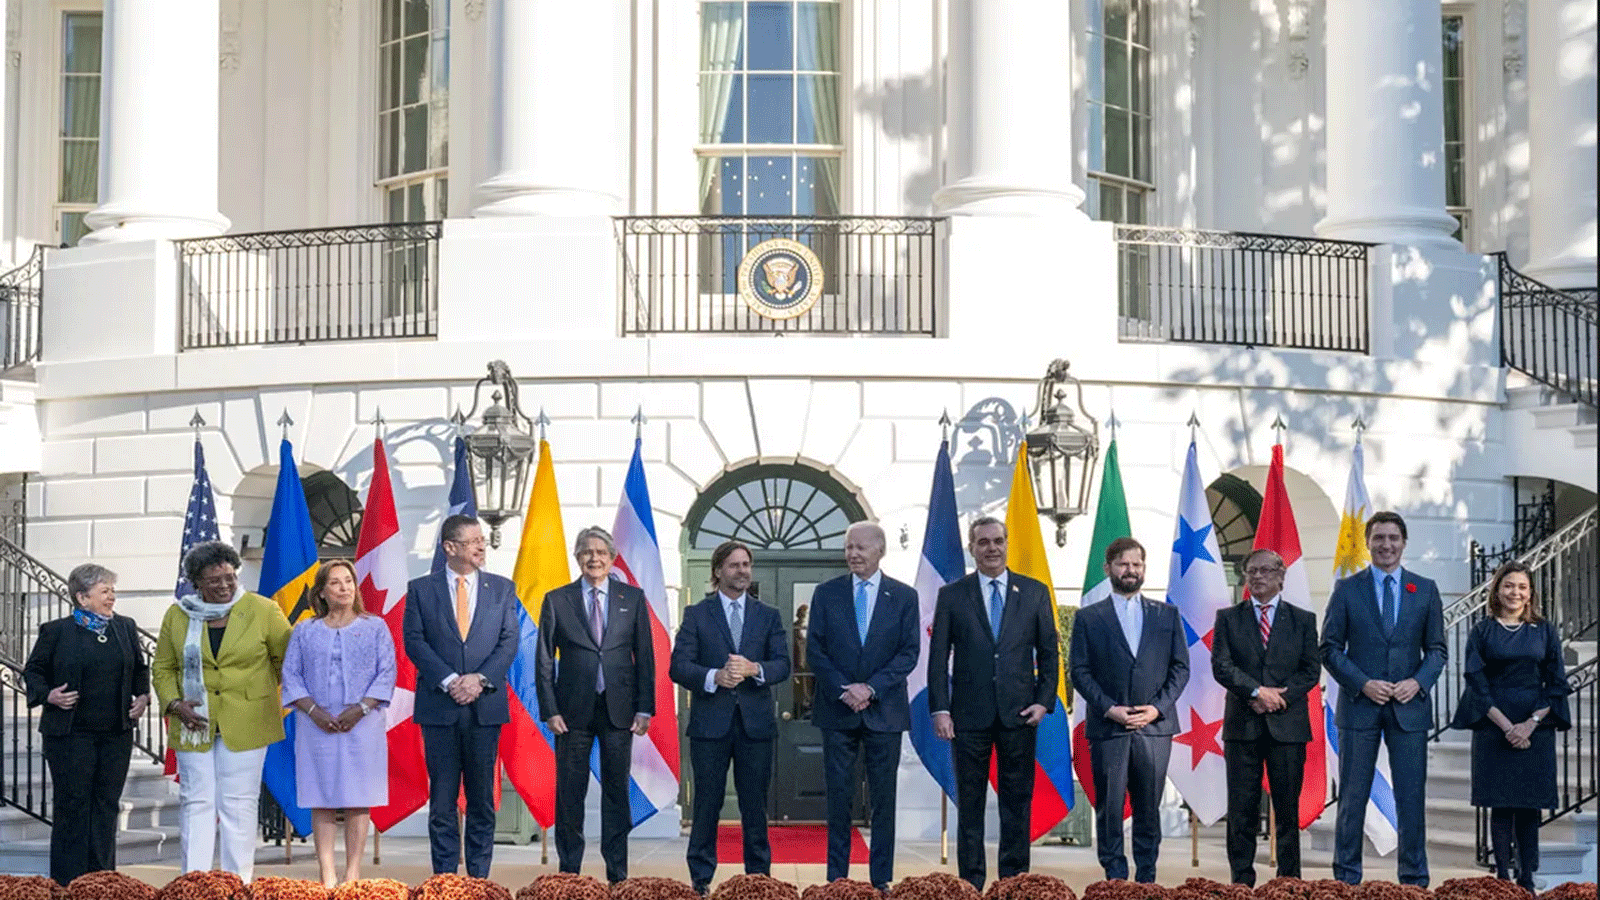 الرئيس الأمريكي جو بايدن مستقبلاً قادة ومسؤولين من أميركا اللاتينية في اطار مباردة شراكة الأميركيتين من أجل الرخاء الاقتصادي (Apep) في البيت الأبيض يوم الجمعة 3 نوفمبر/تشرين الثاني 2023